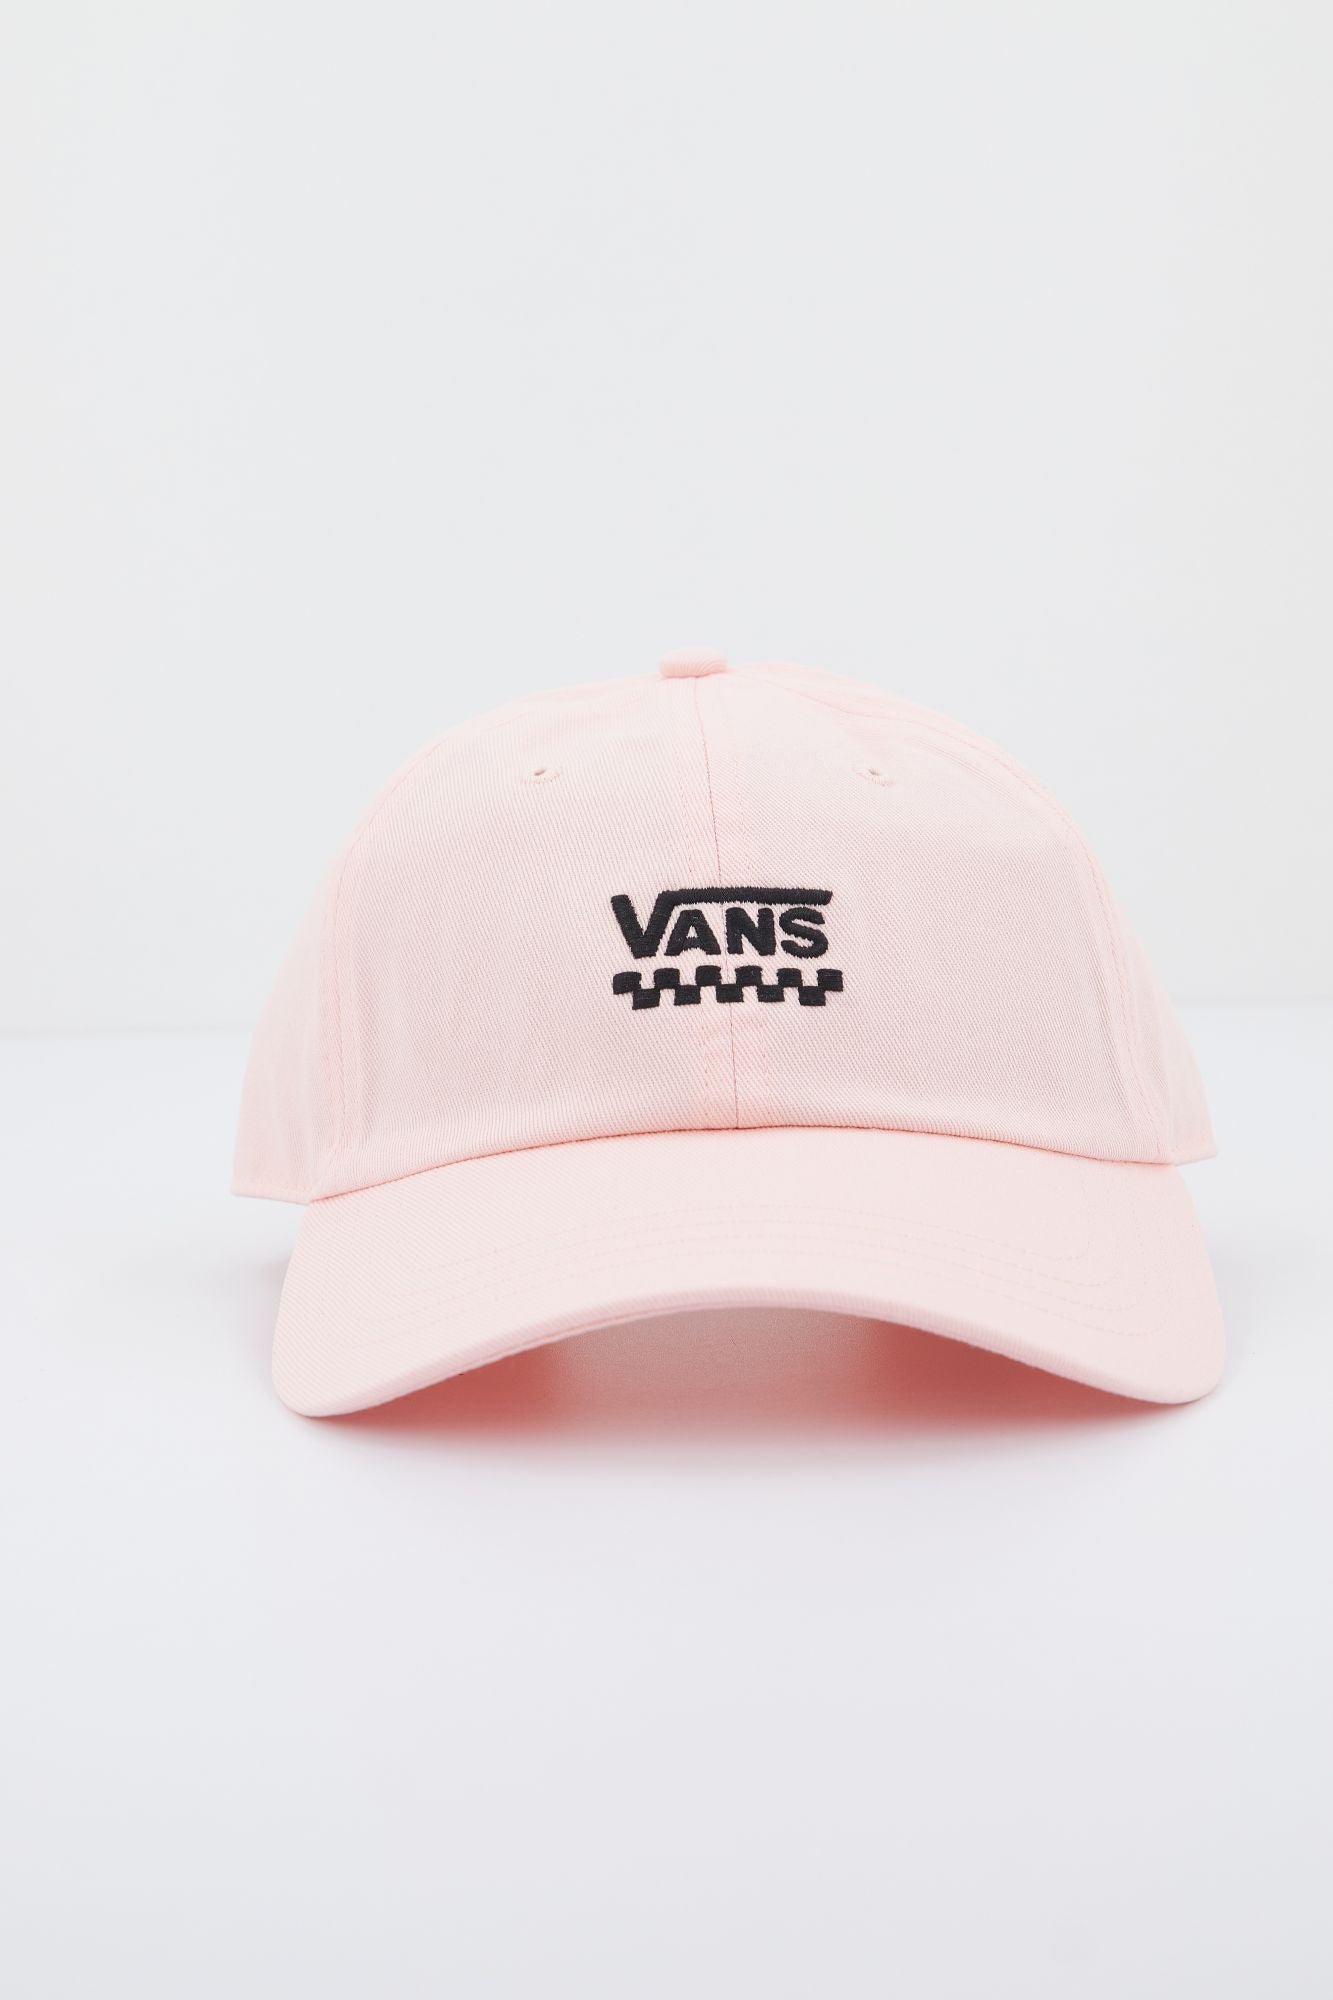 VANS COURT SIDE HAT en color ROSA (1)